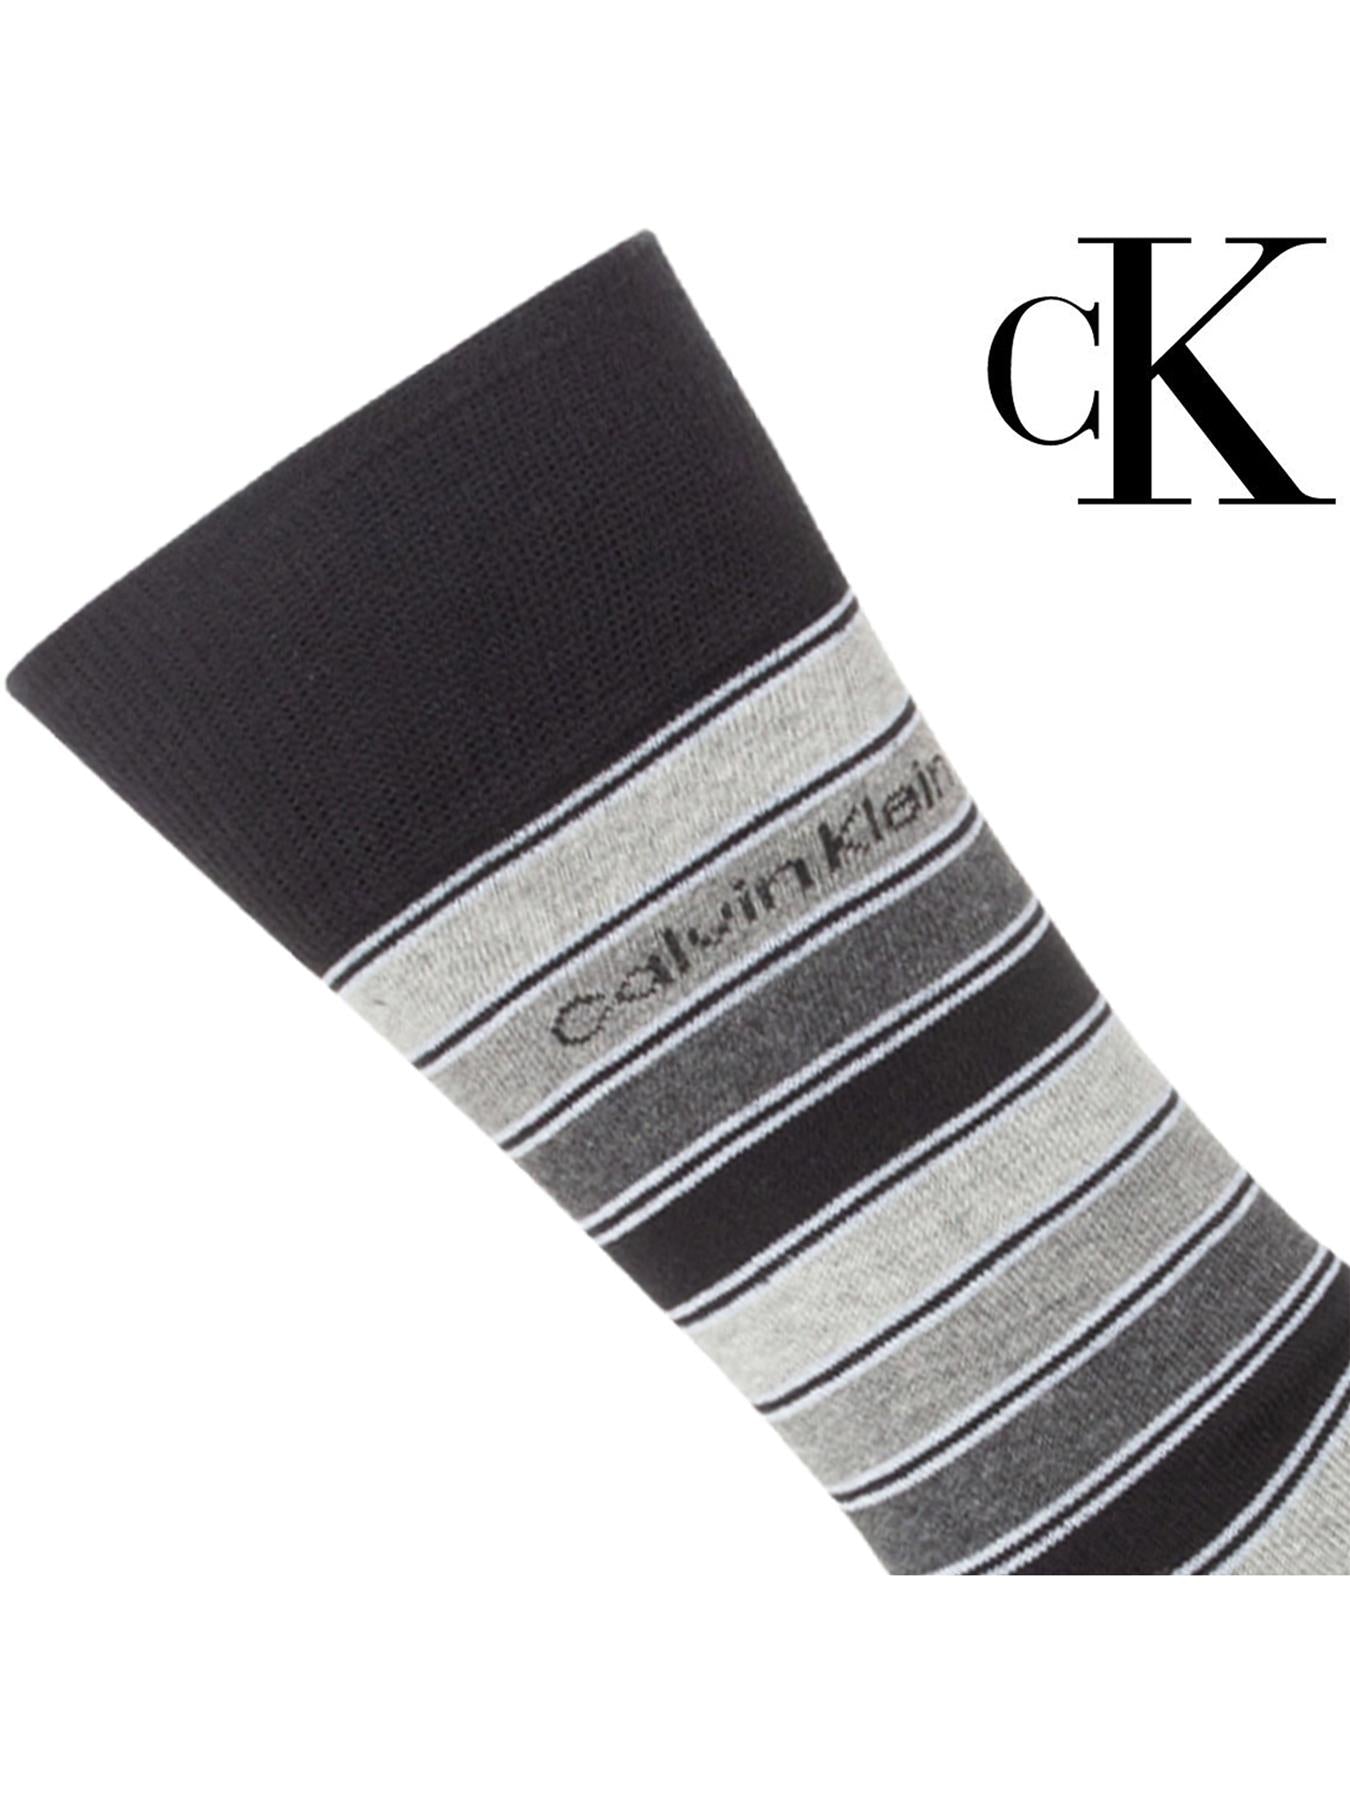 CK TIN SOCKS Calvin Klein | Mens Casual Designer Socks 4 Pack Gift Set CALVIN KLEIN RAWDENIM